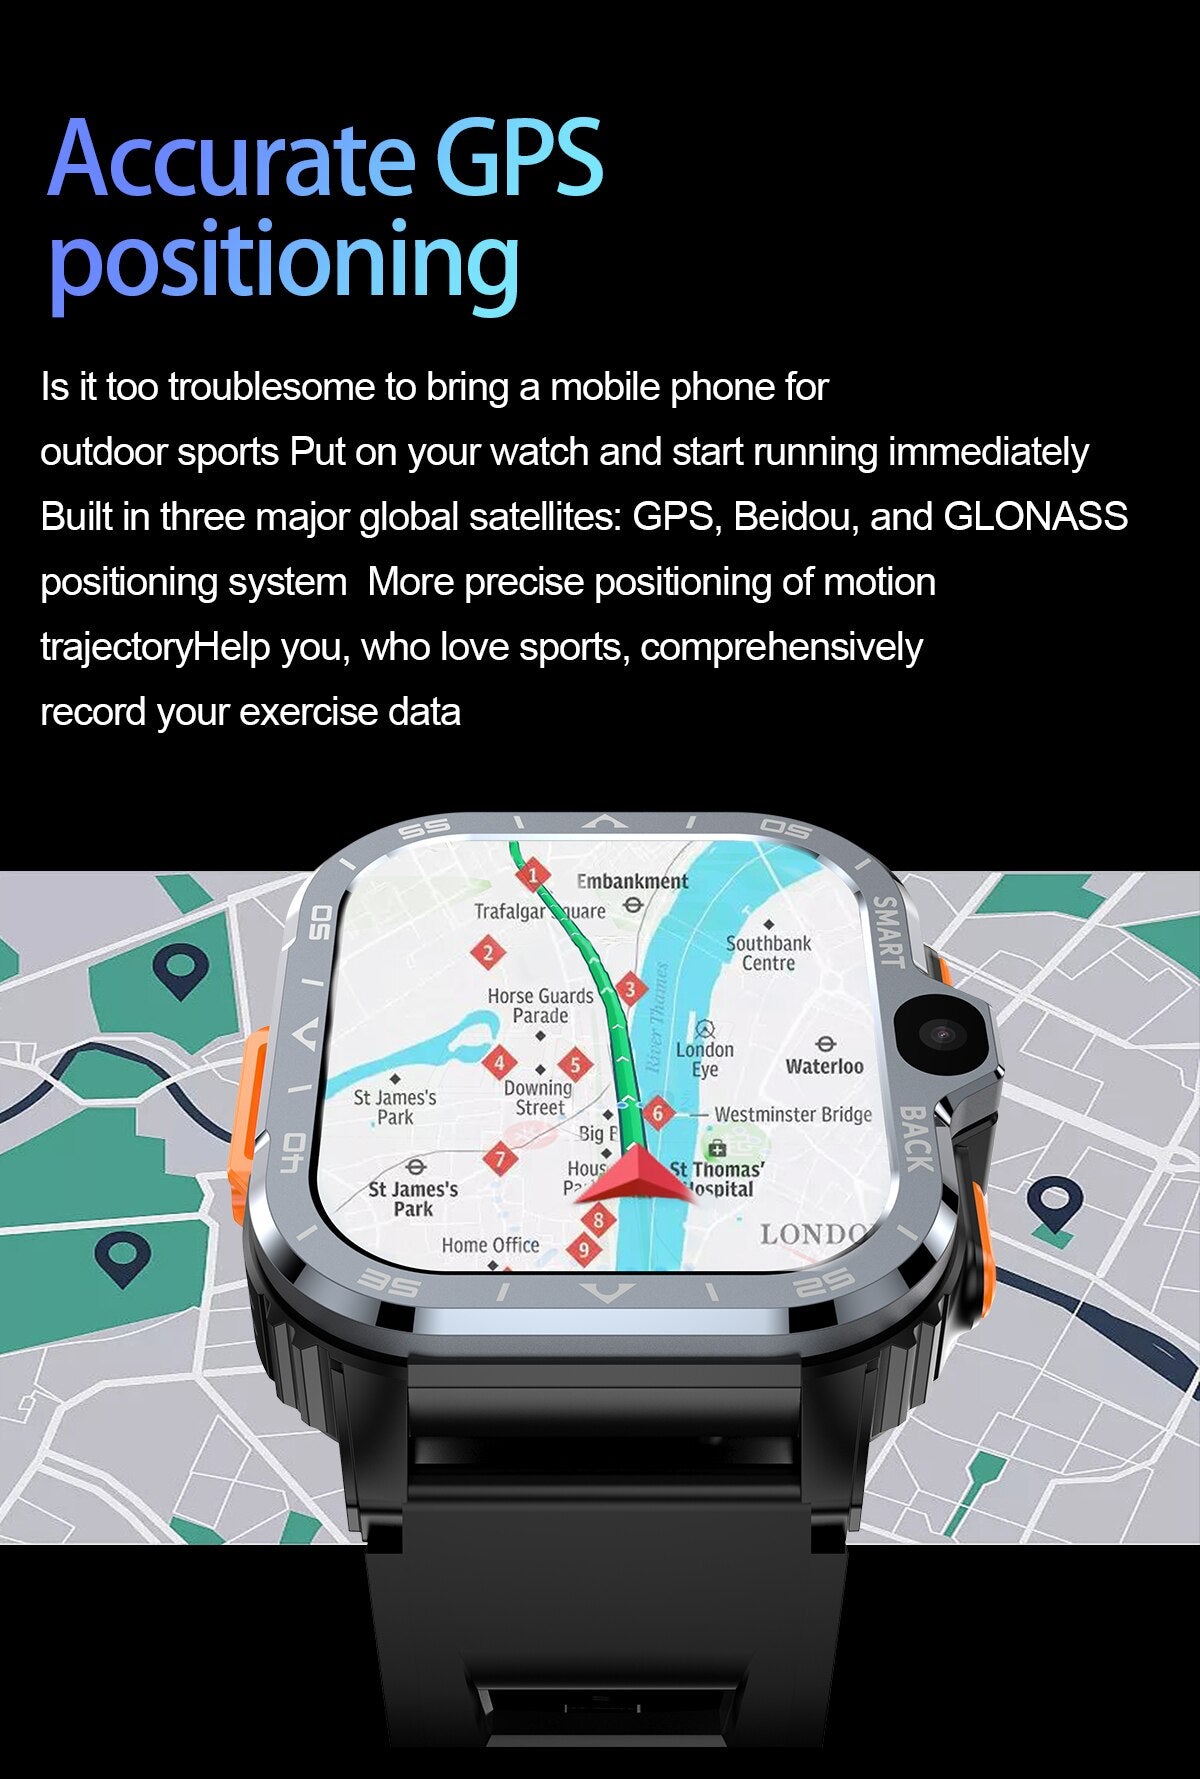 4g android relógio inteligente masculino com cartão sim wifi câmera dupla google play gps smartwatch 2.03 polegada 800mah freqüência cardíaca nfc relógios